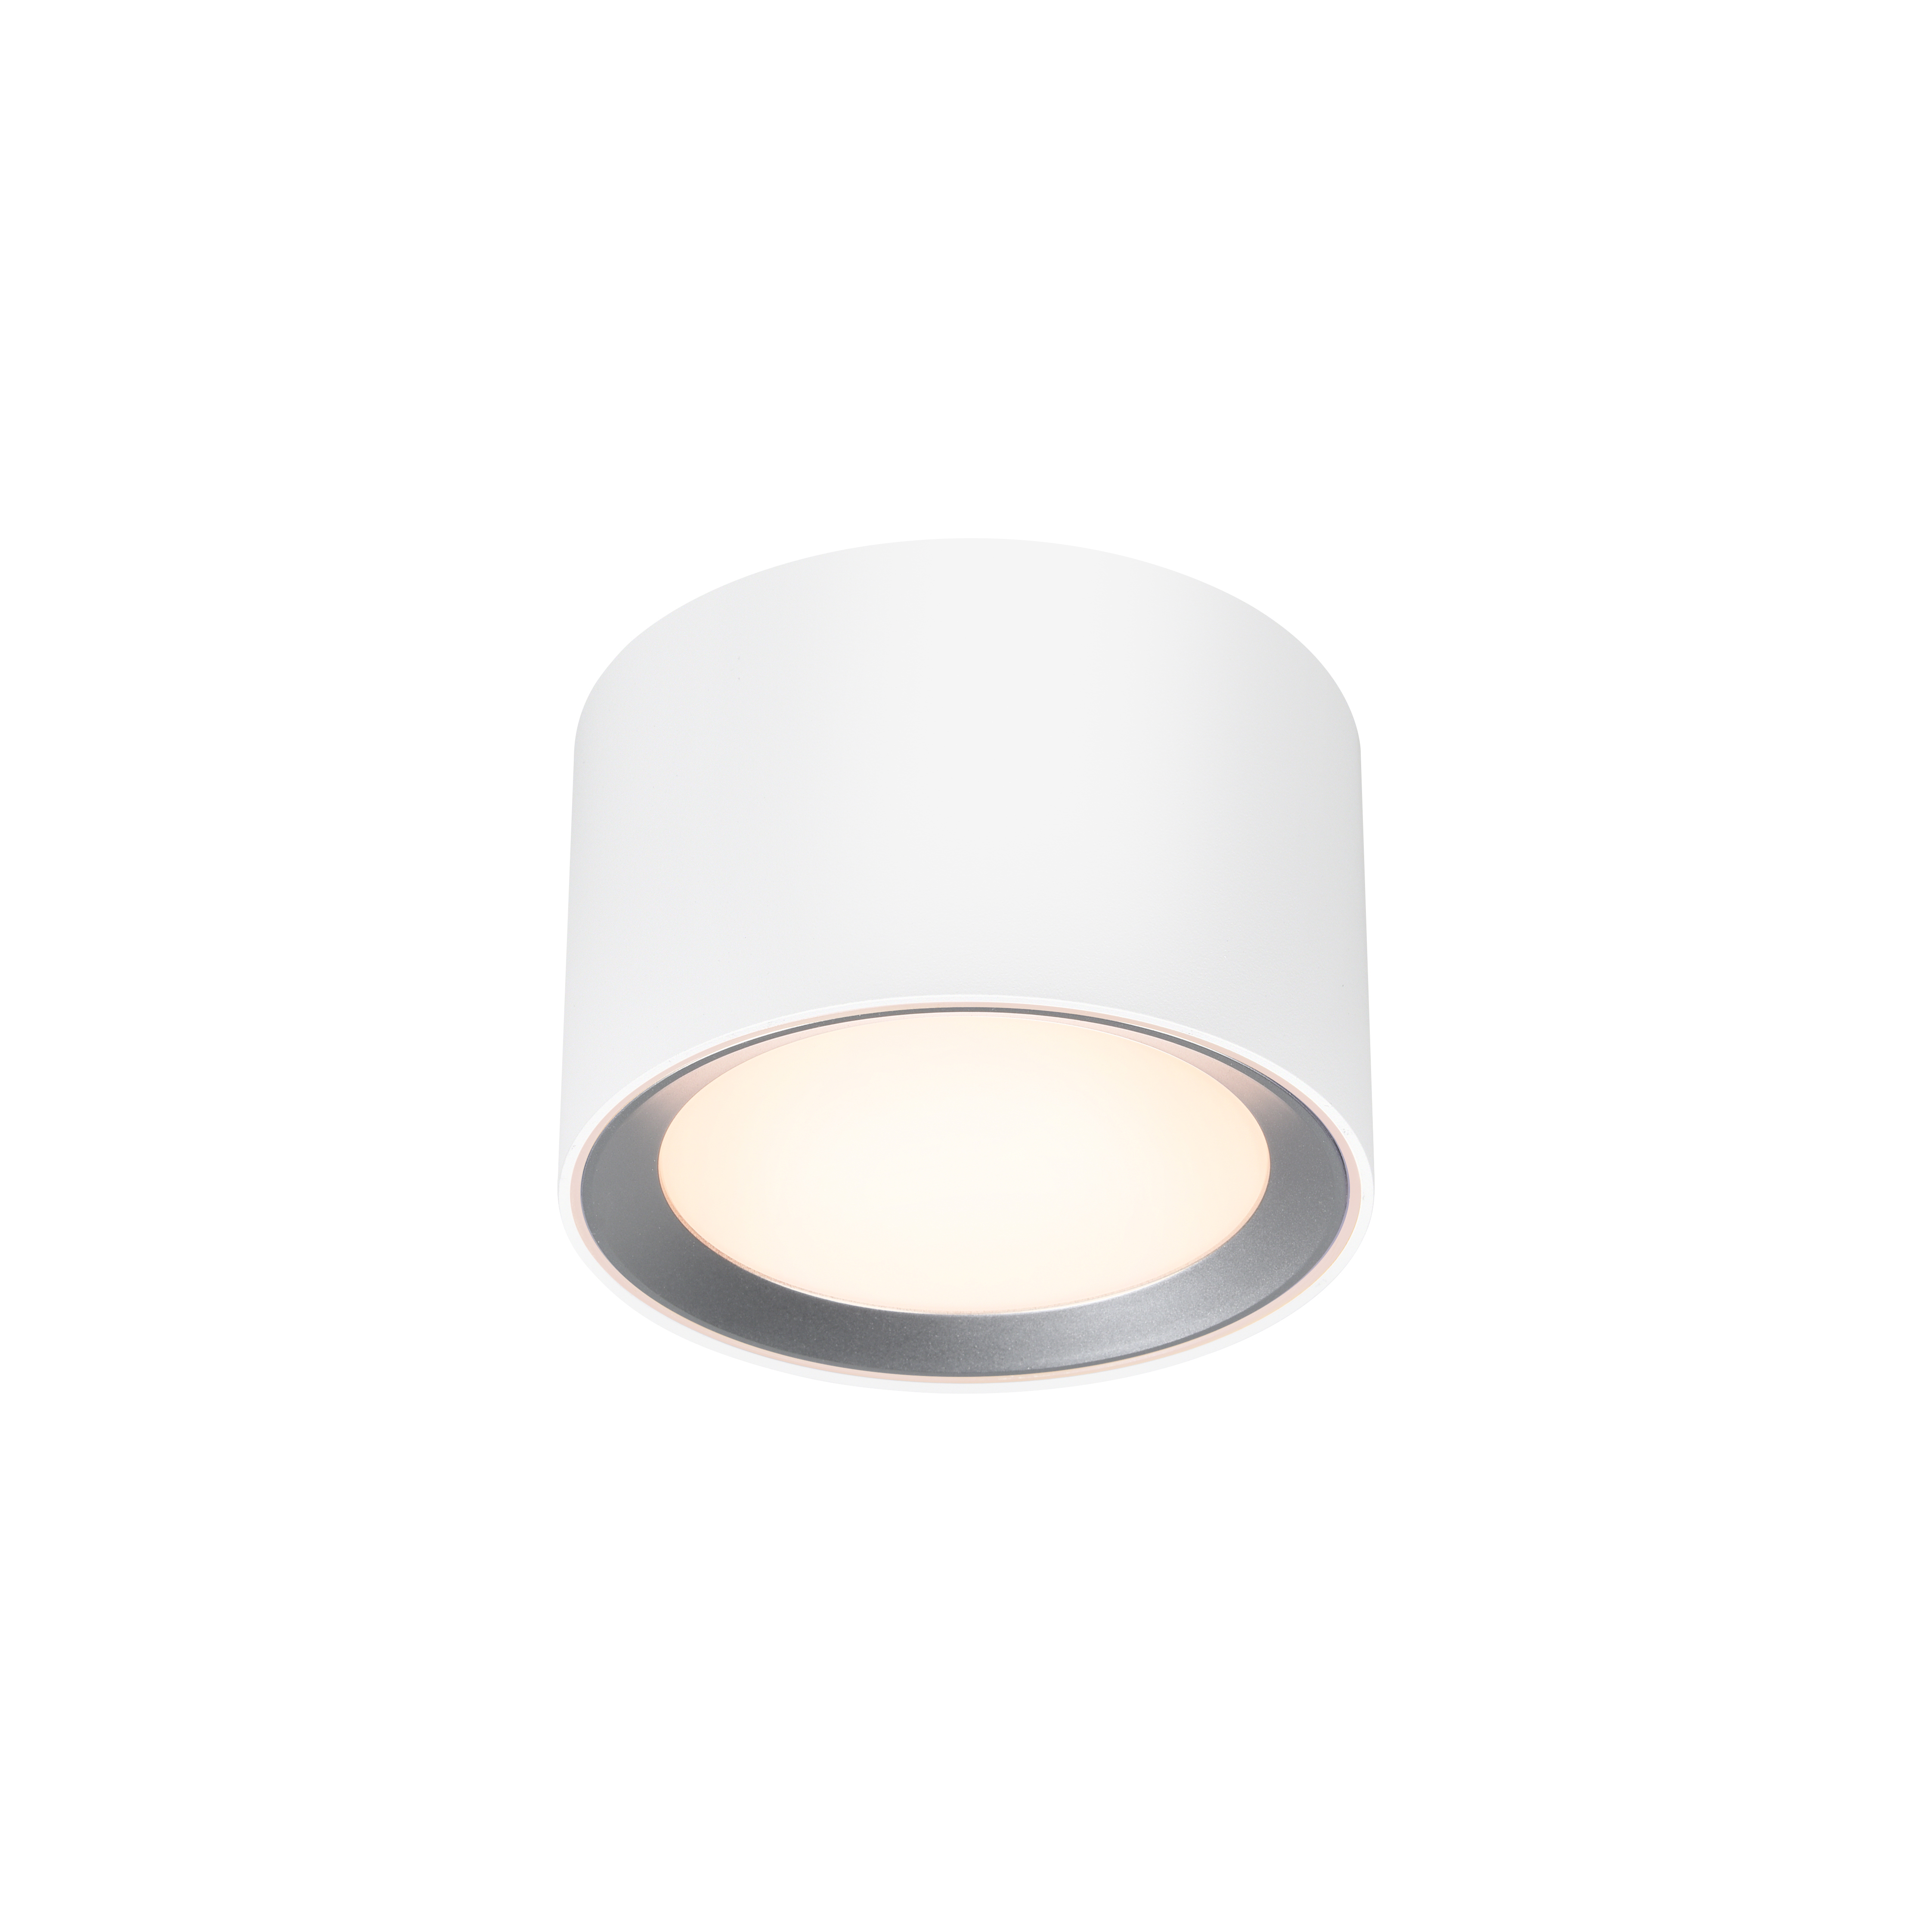 Landon Smart | Ceiling light | White